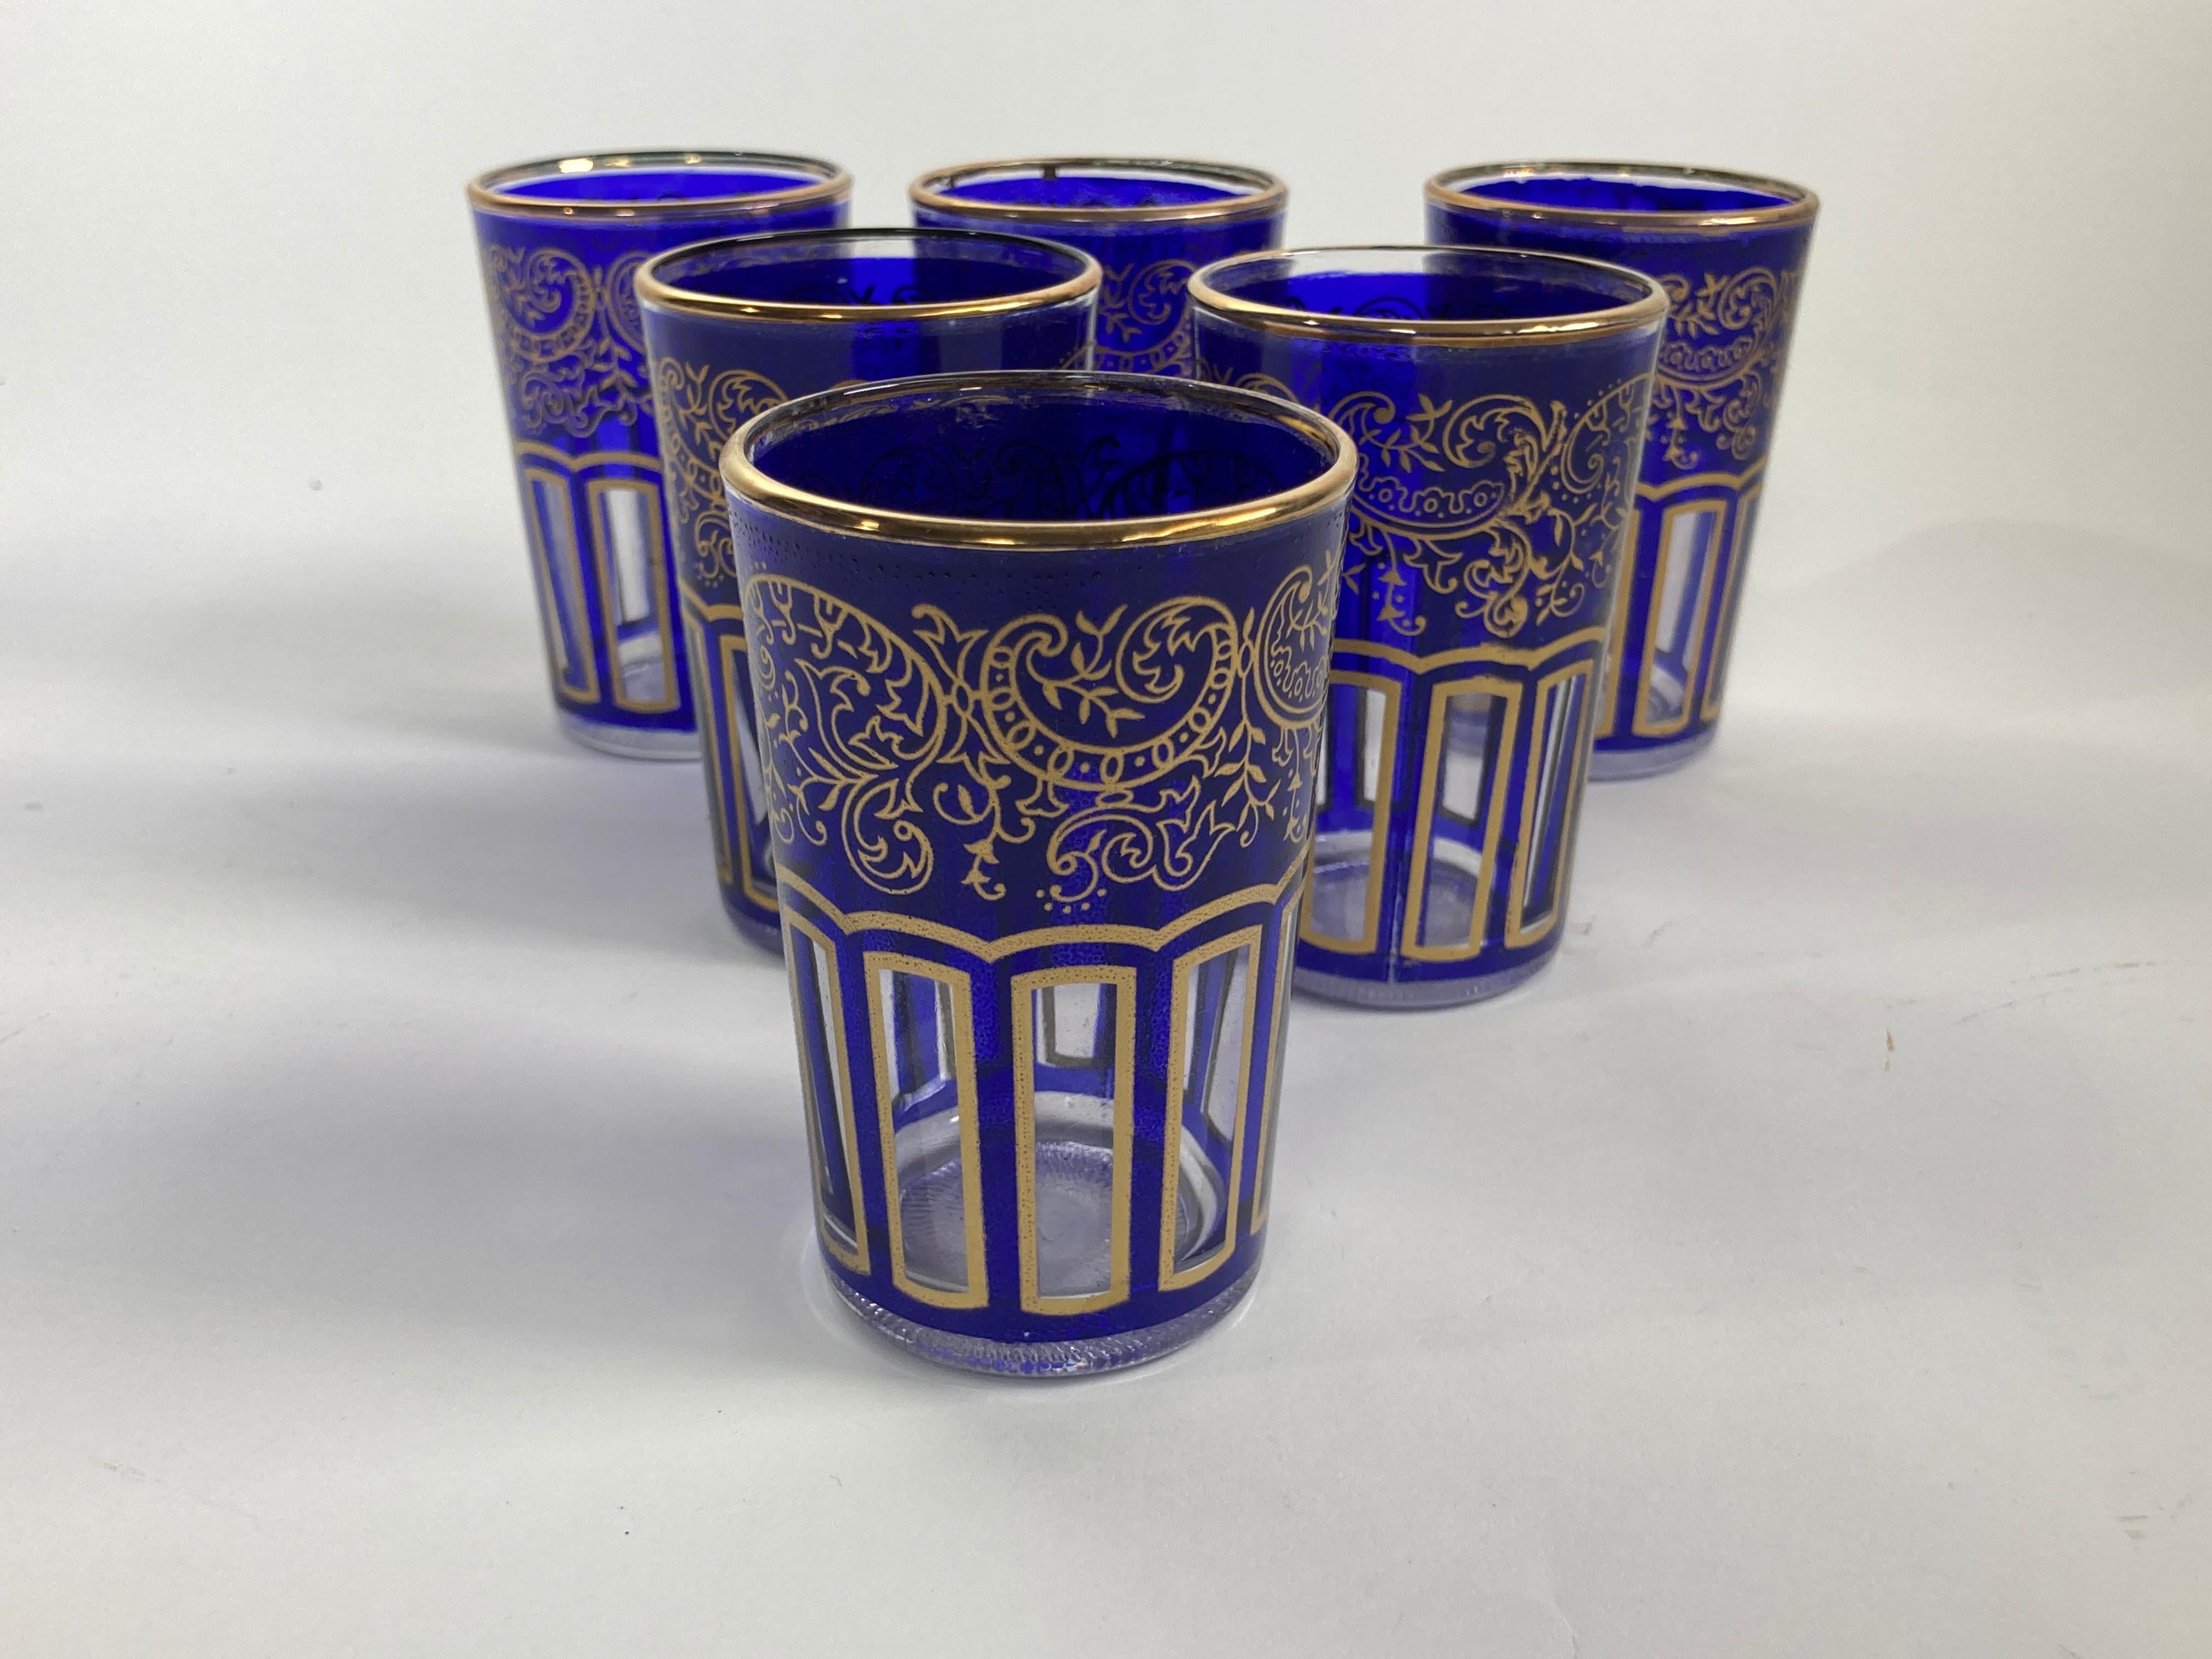 Verres à shot marocains bleu royal avec design mauresque doré Lot de 6.
Ensemble de six verres à boire bleu cobalt royal avec motif mauresque doré.
Ces magnifiques verres à boire marocains sont décorés d'une frise mauresque classique d'arabesques et